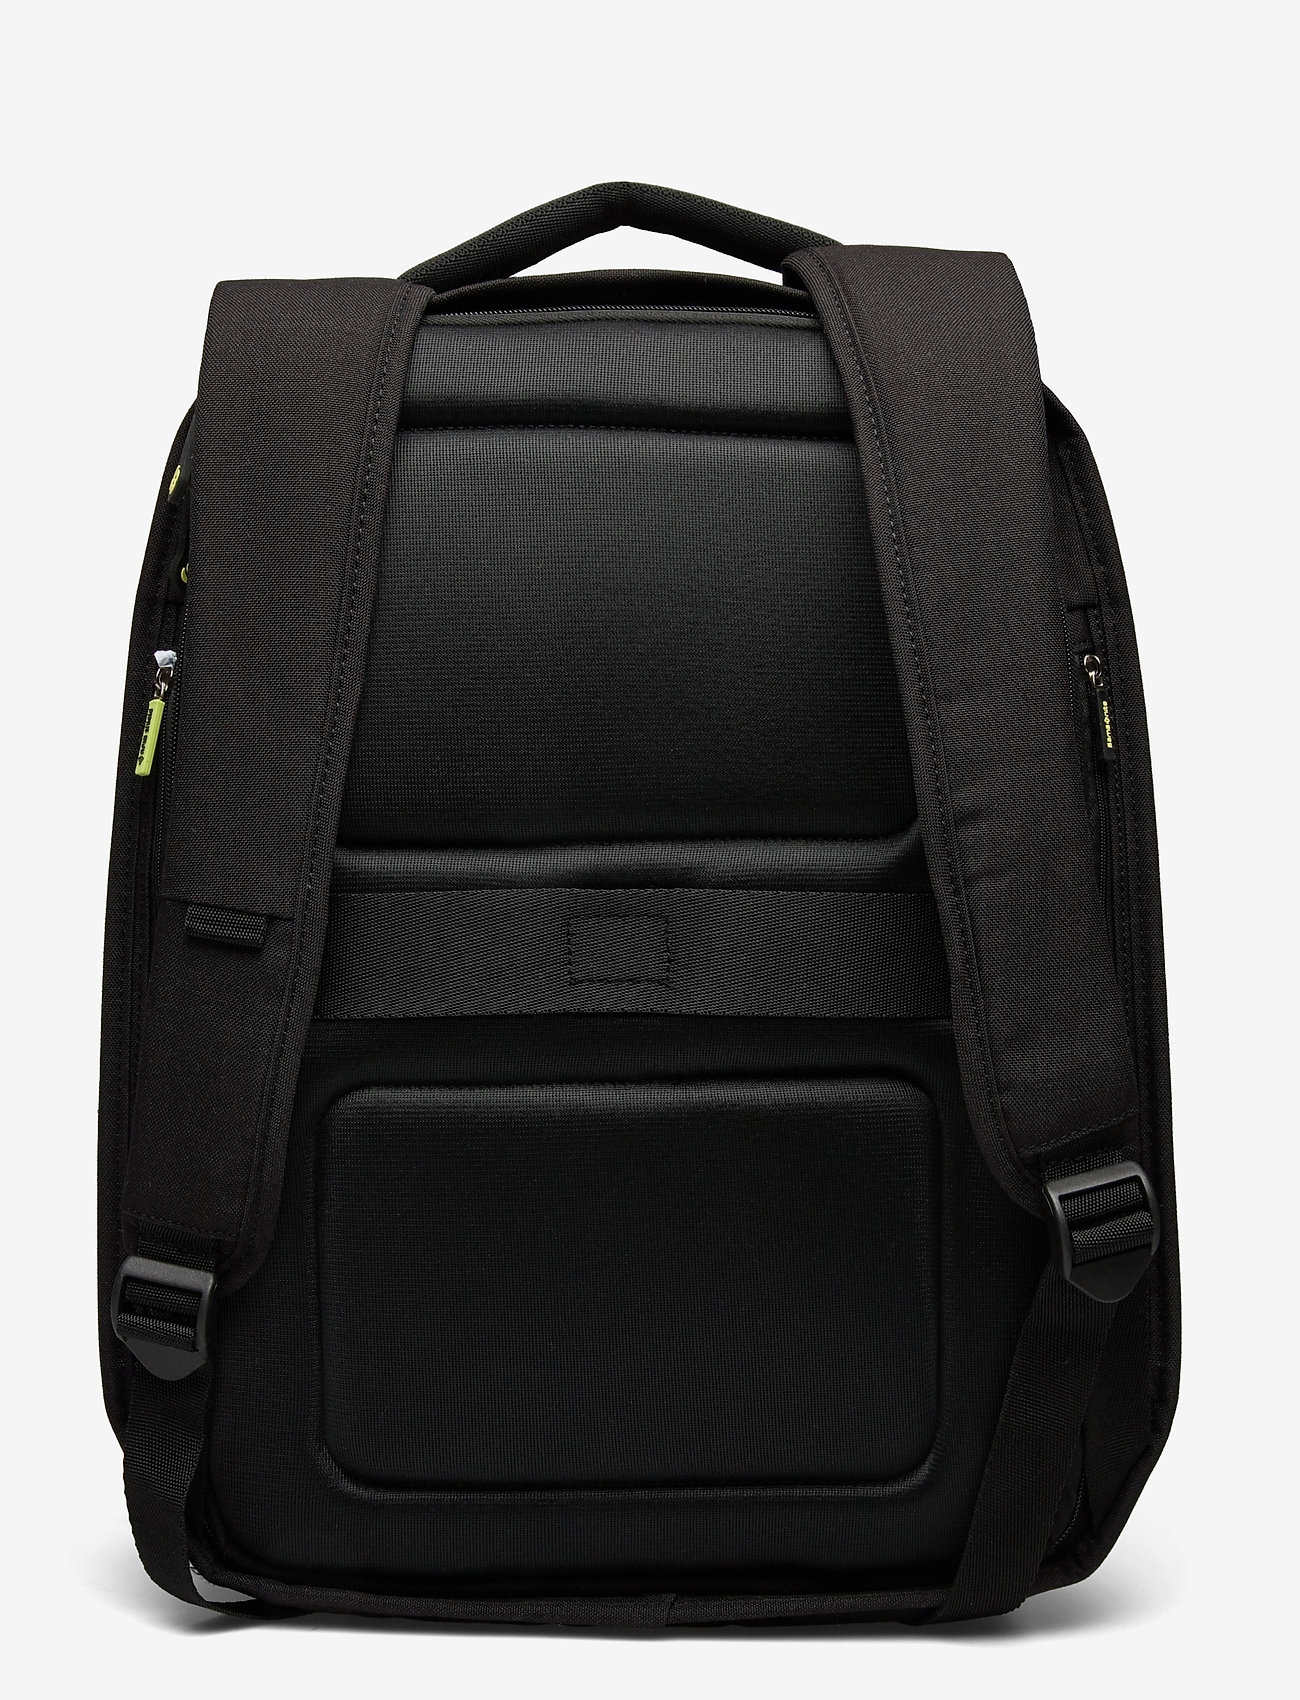 Samsonite - Securipak Datorryggsäck 15.6" - rucksäcke - black - 1